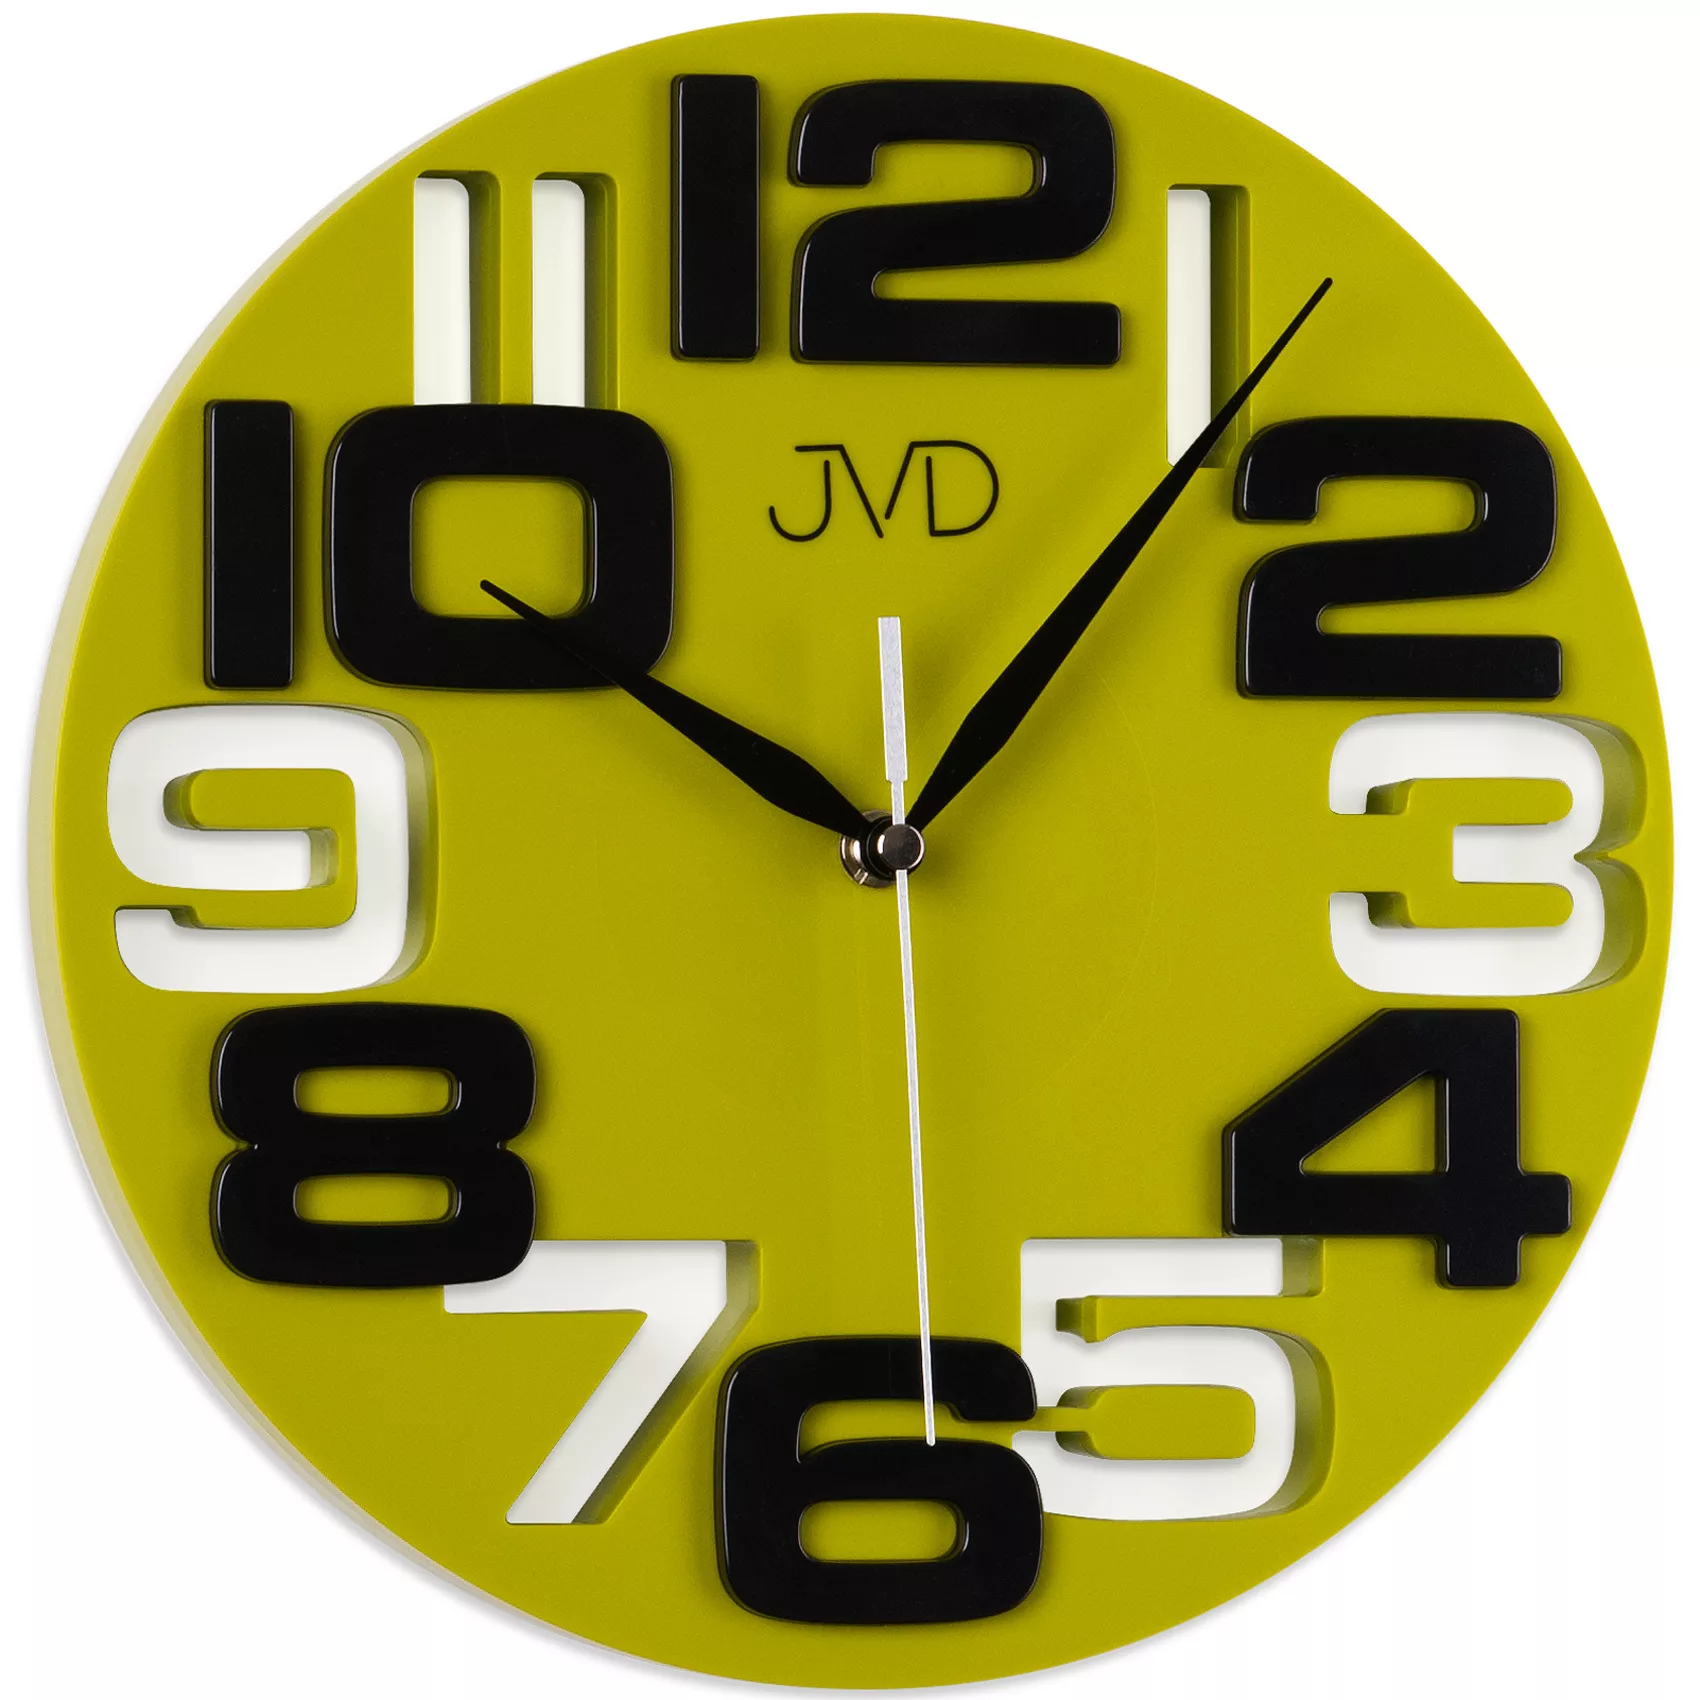 Jvd H107.3 Wanduhr Quarz Analog Grün Gelbgrün Rund Modern günstig online kaufen